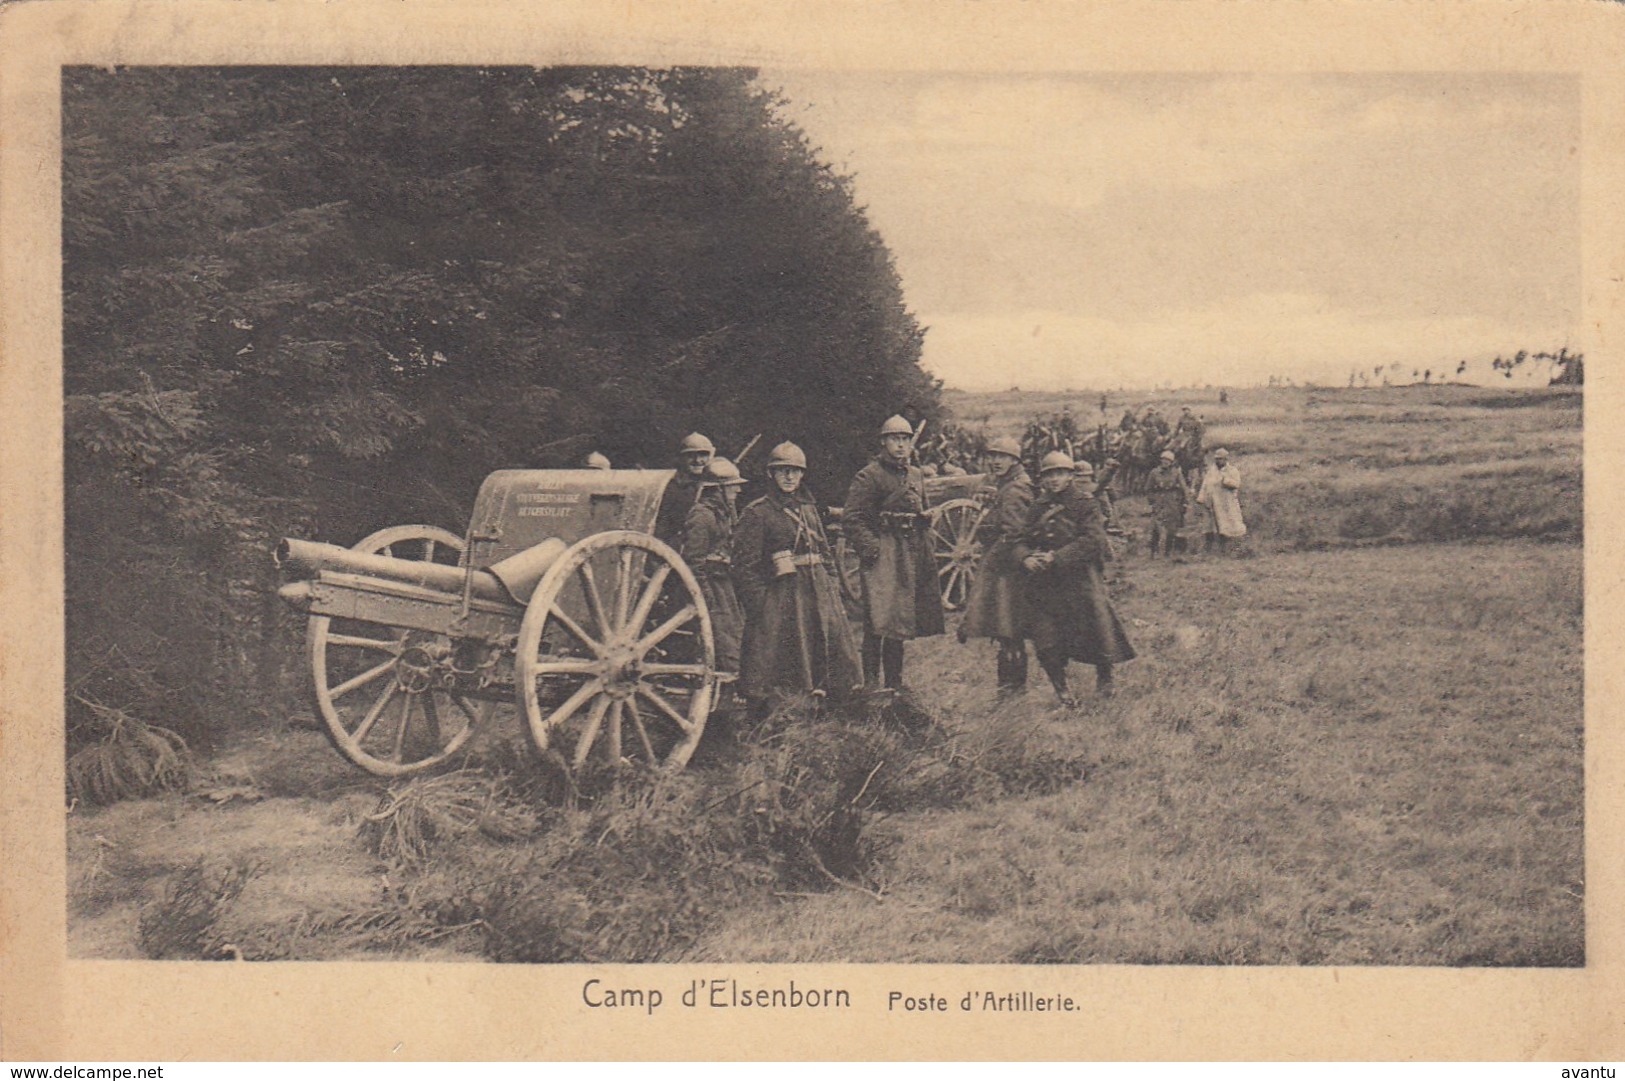 ELSENBORN / CAMP / POSTE D ARTILLERIE - Elsenborn (camp)